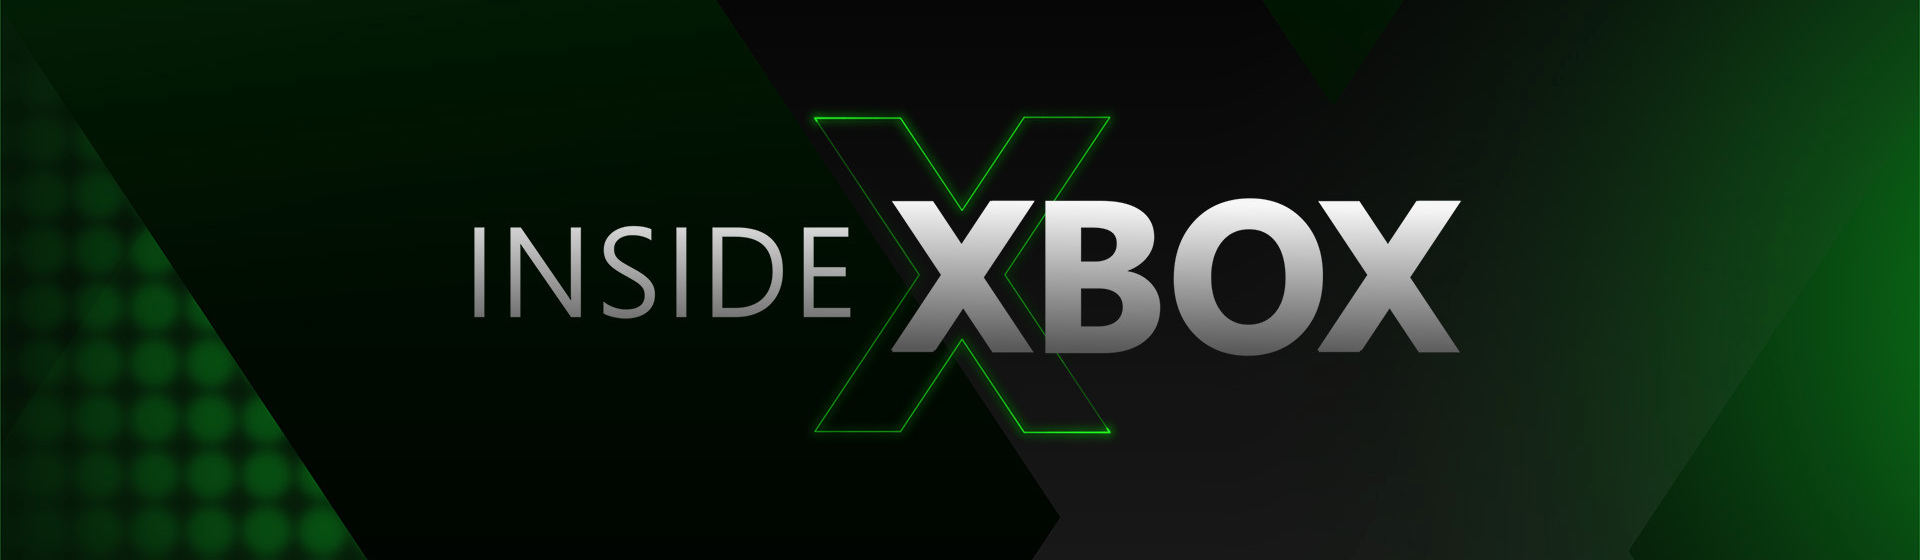 Inside Xbox: Xbox Series X